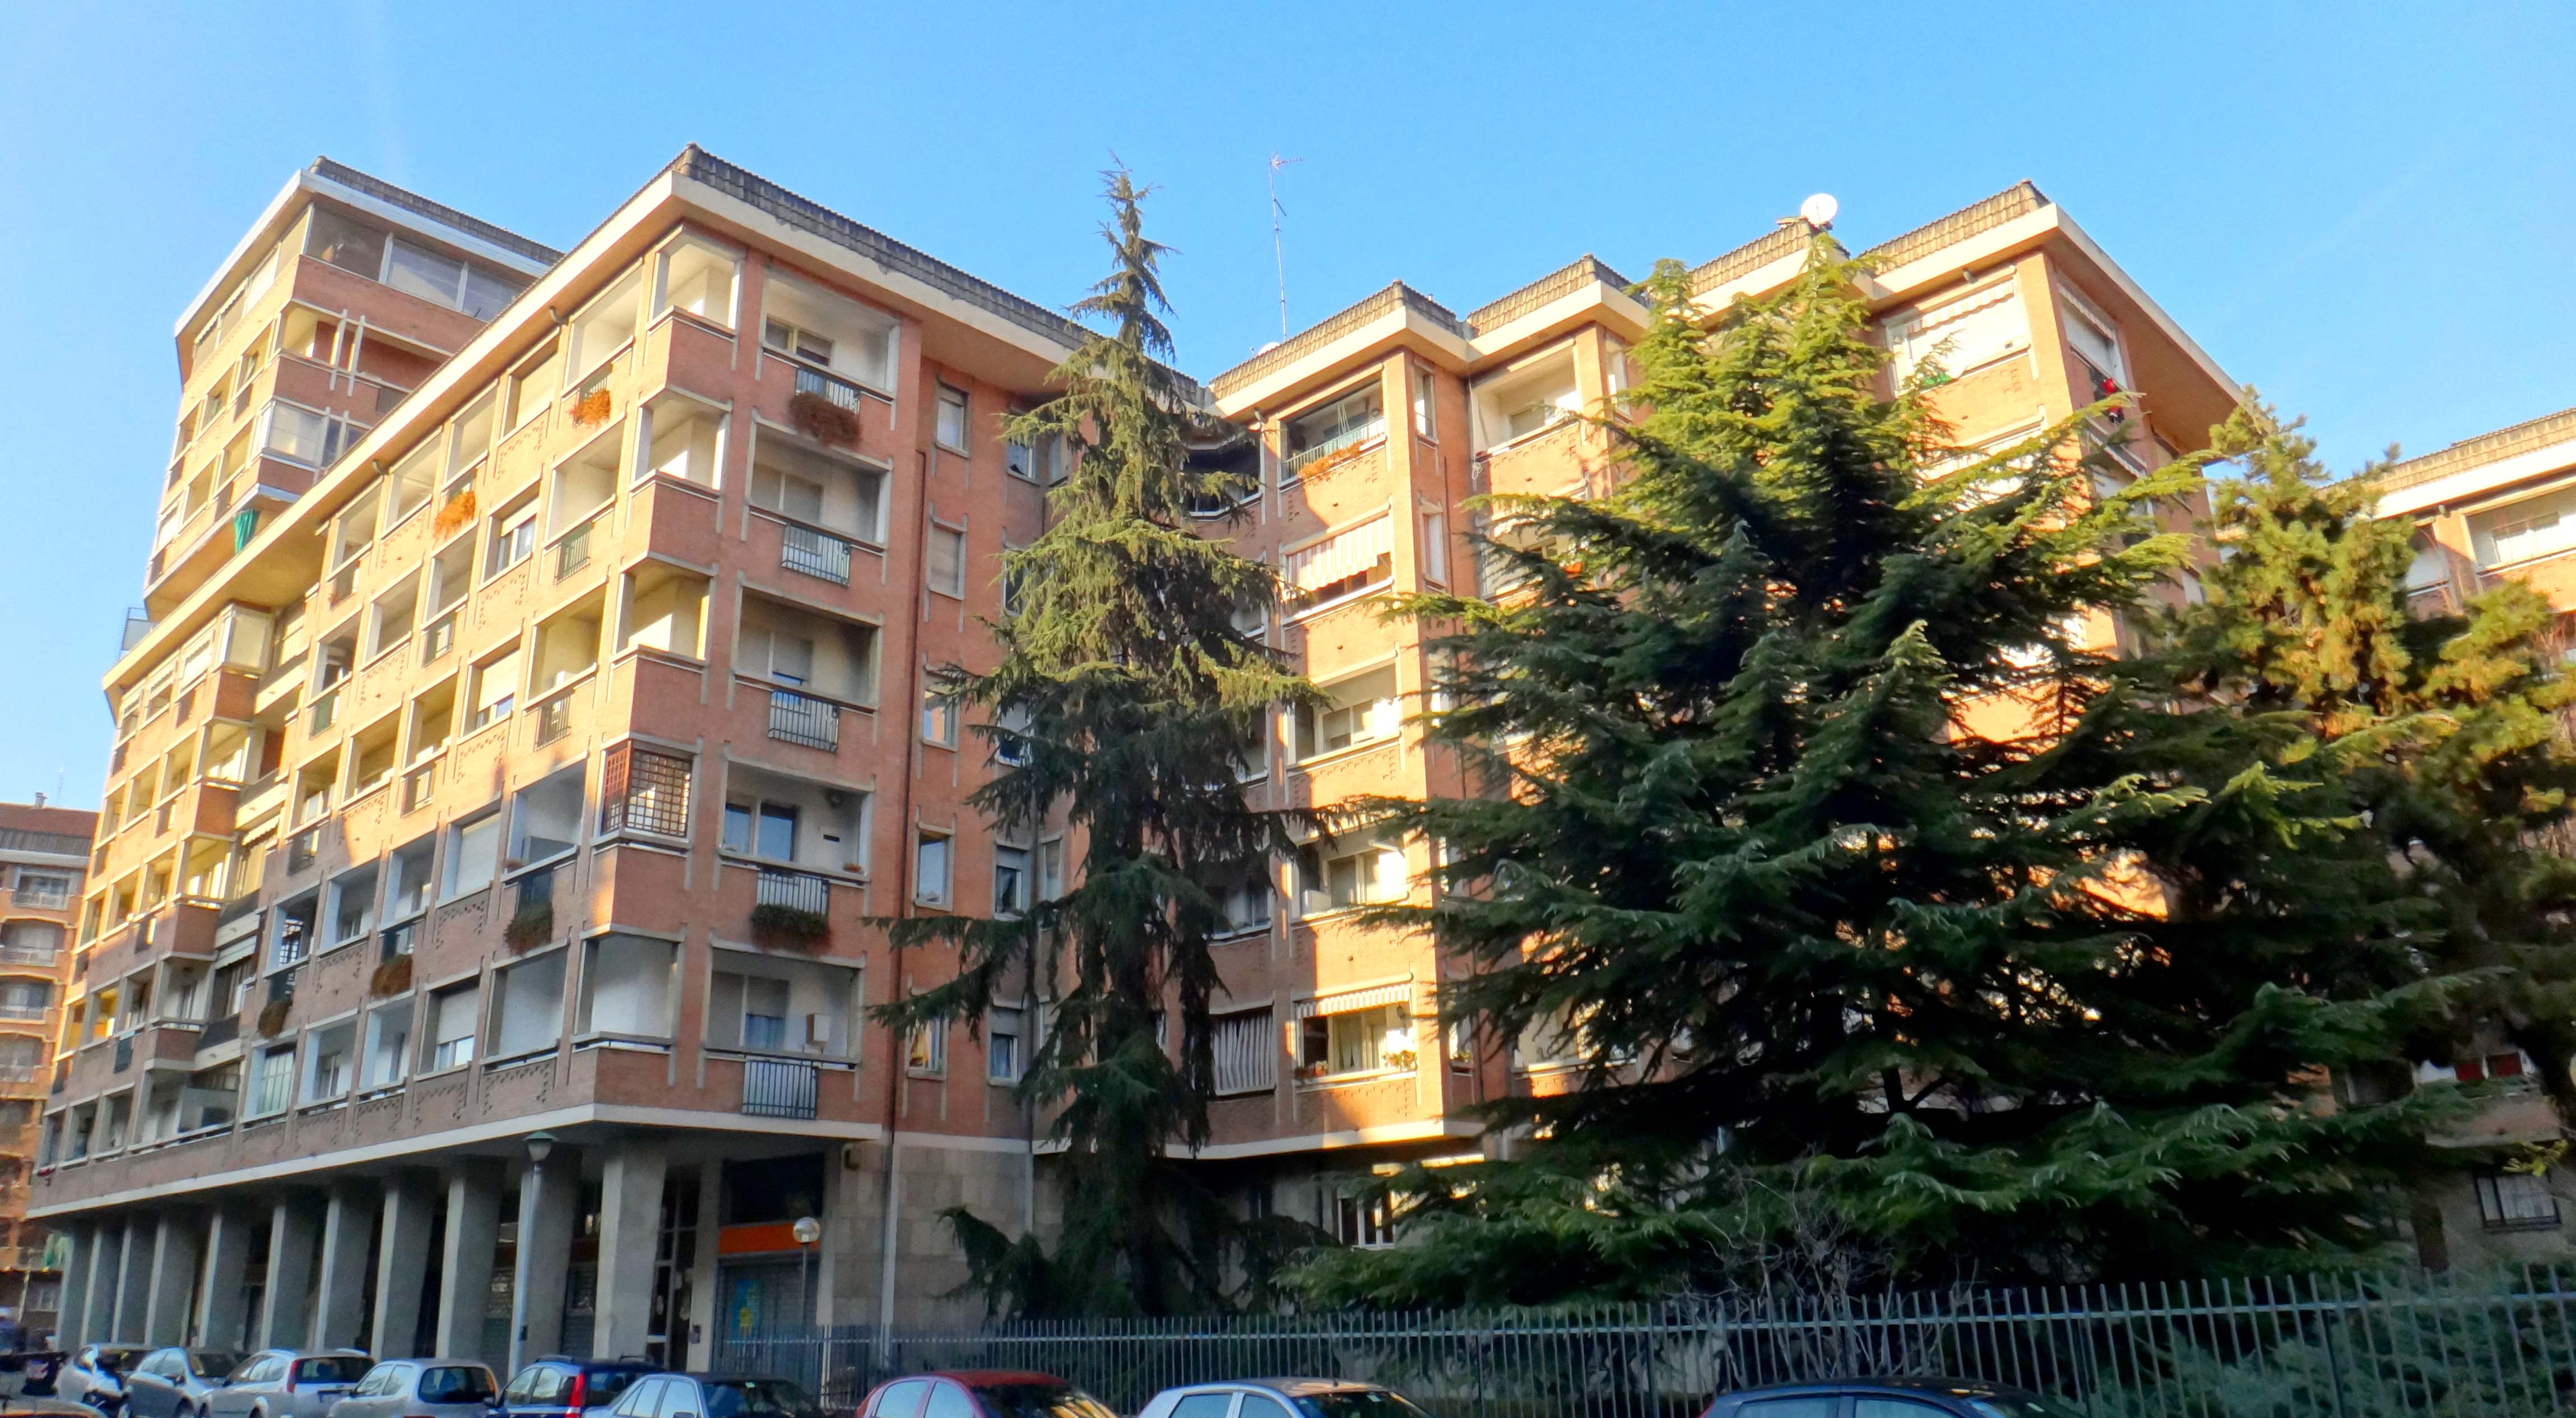 34 Torino - Via Amedeo Ugolini 16 - ITALIA - Frazionamento di Nuova Costruzione